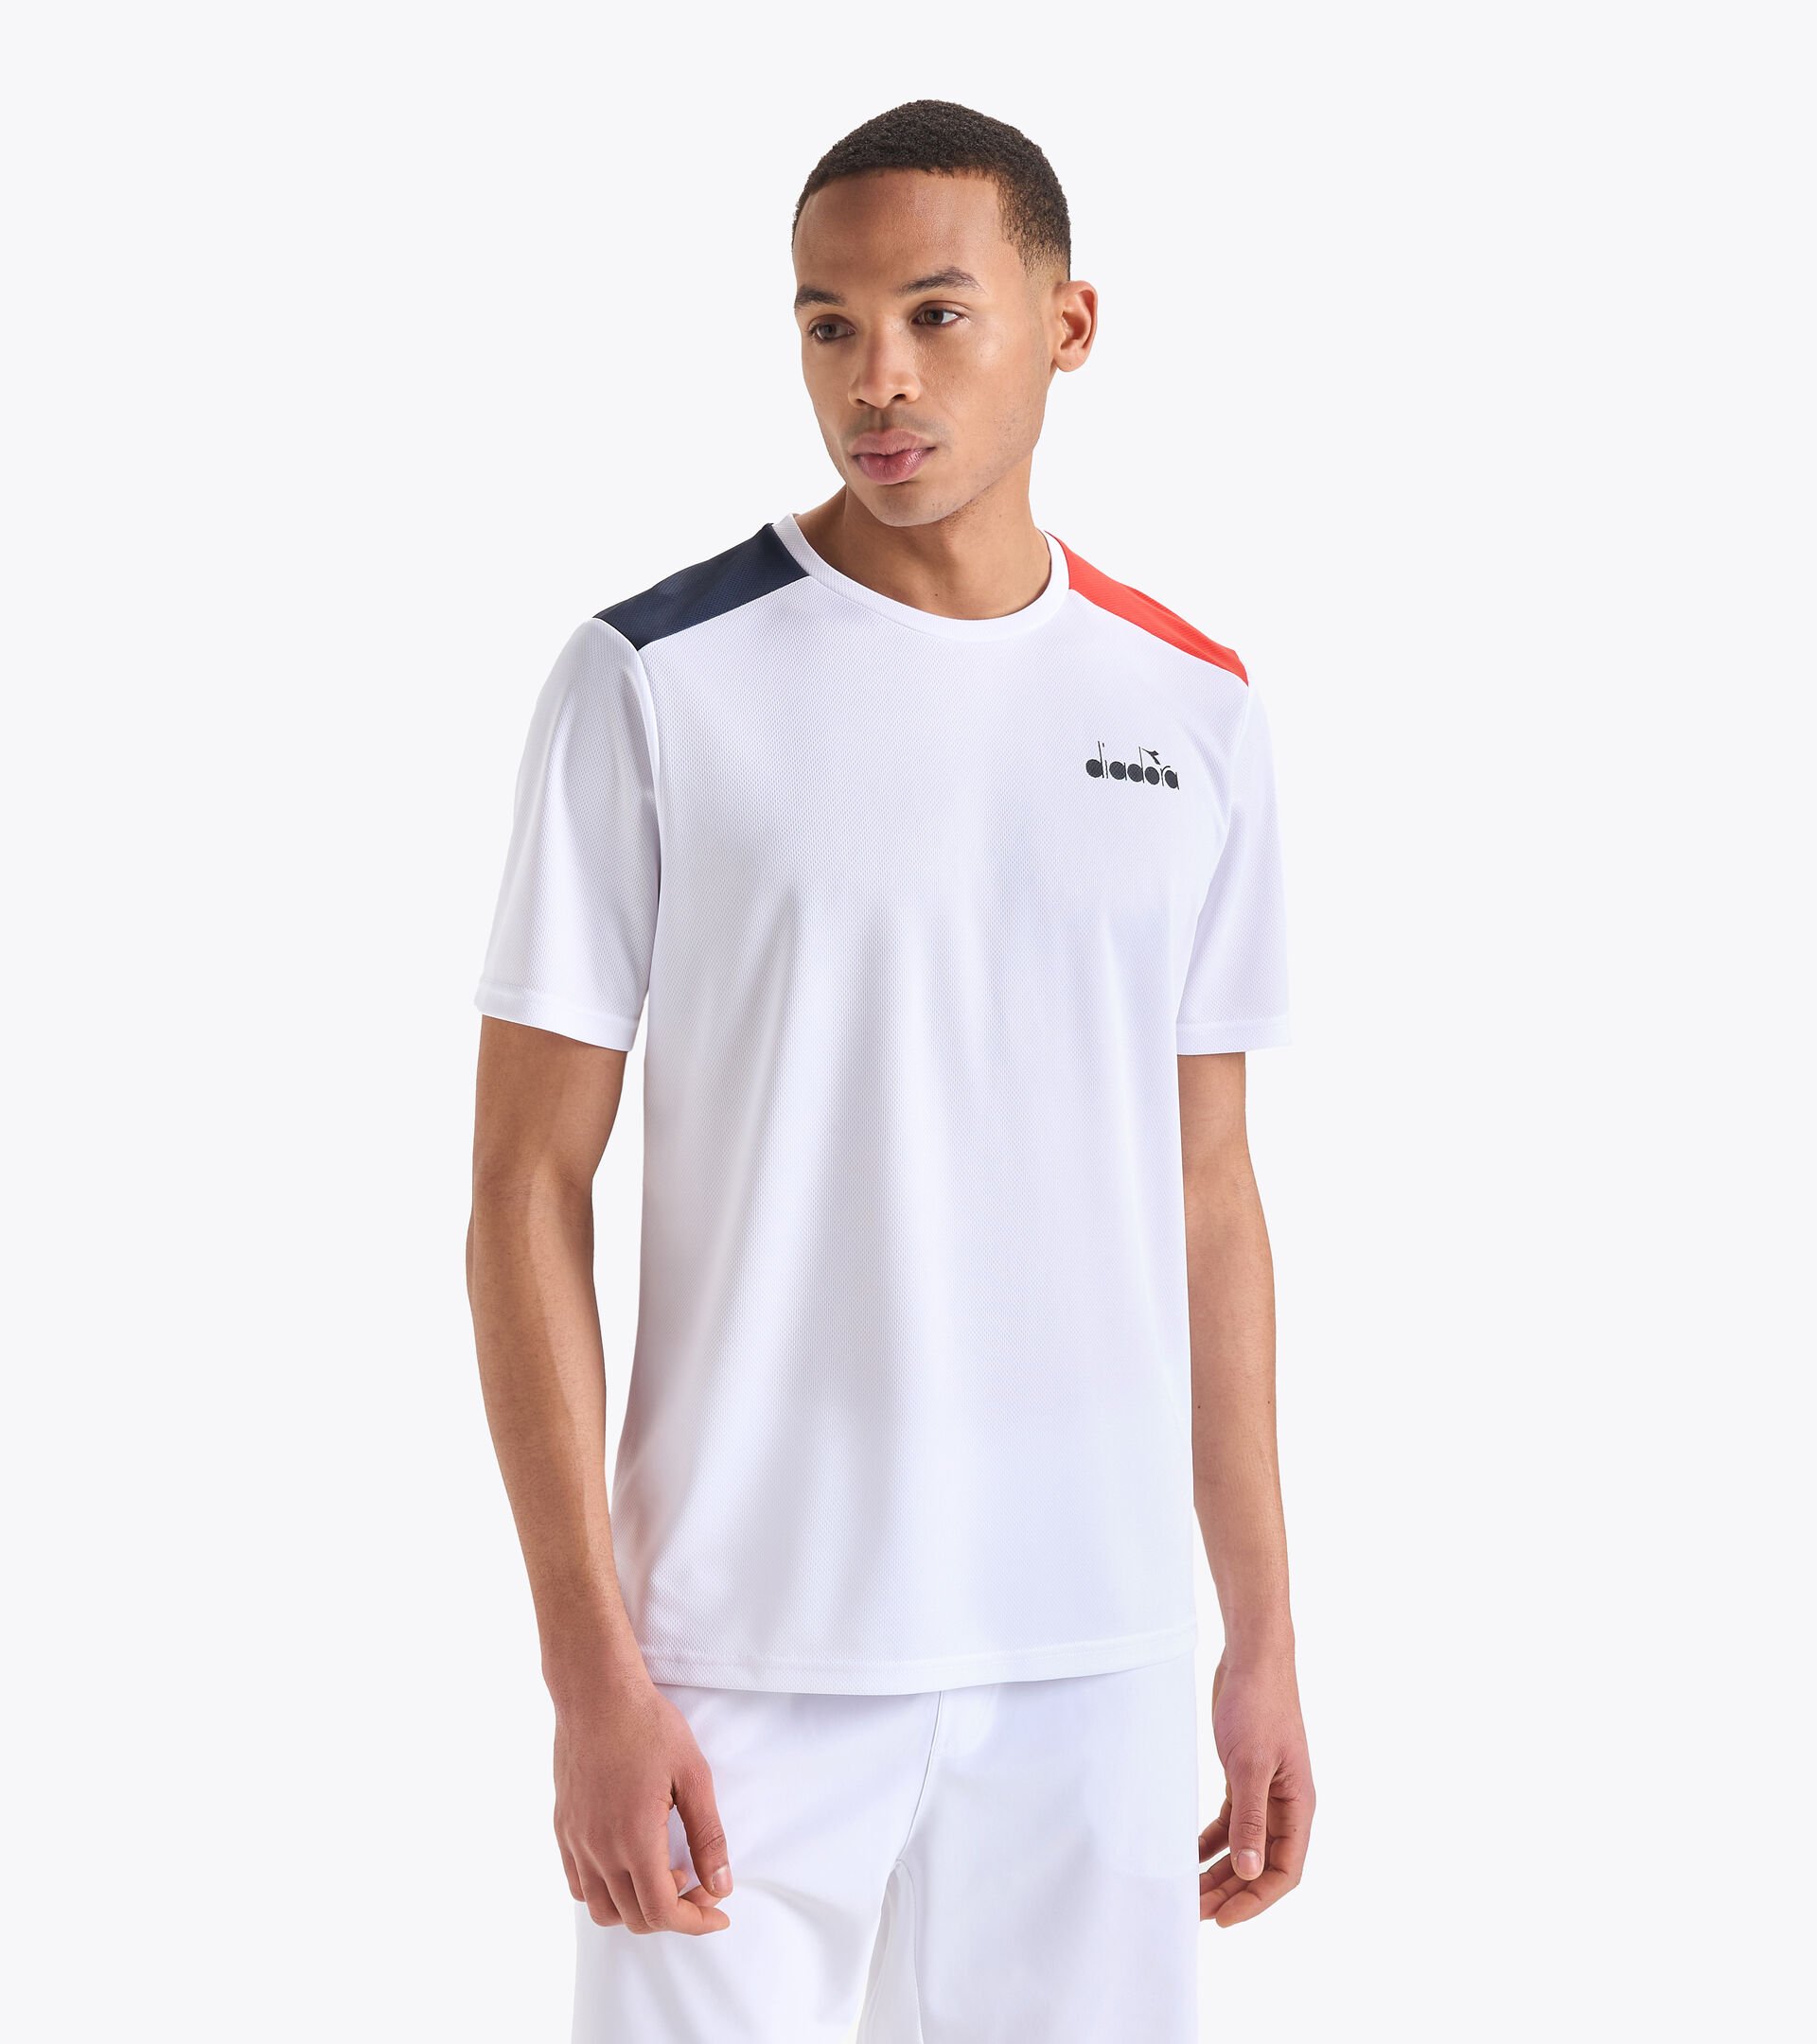 SS CORE T-SHIRT T Tennis shirt - Men - Diadora Online Store